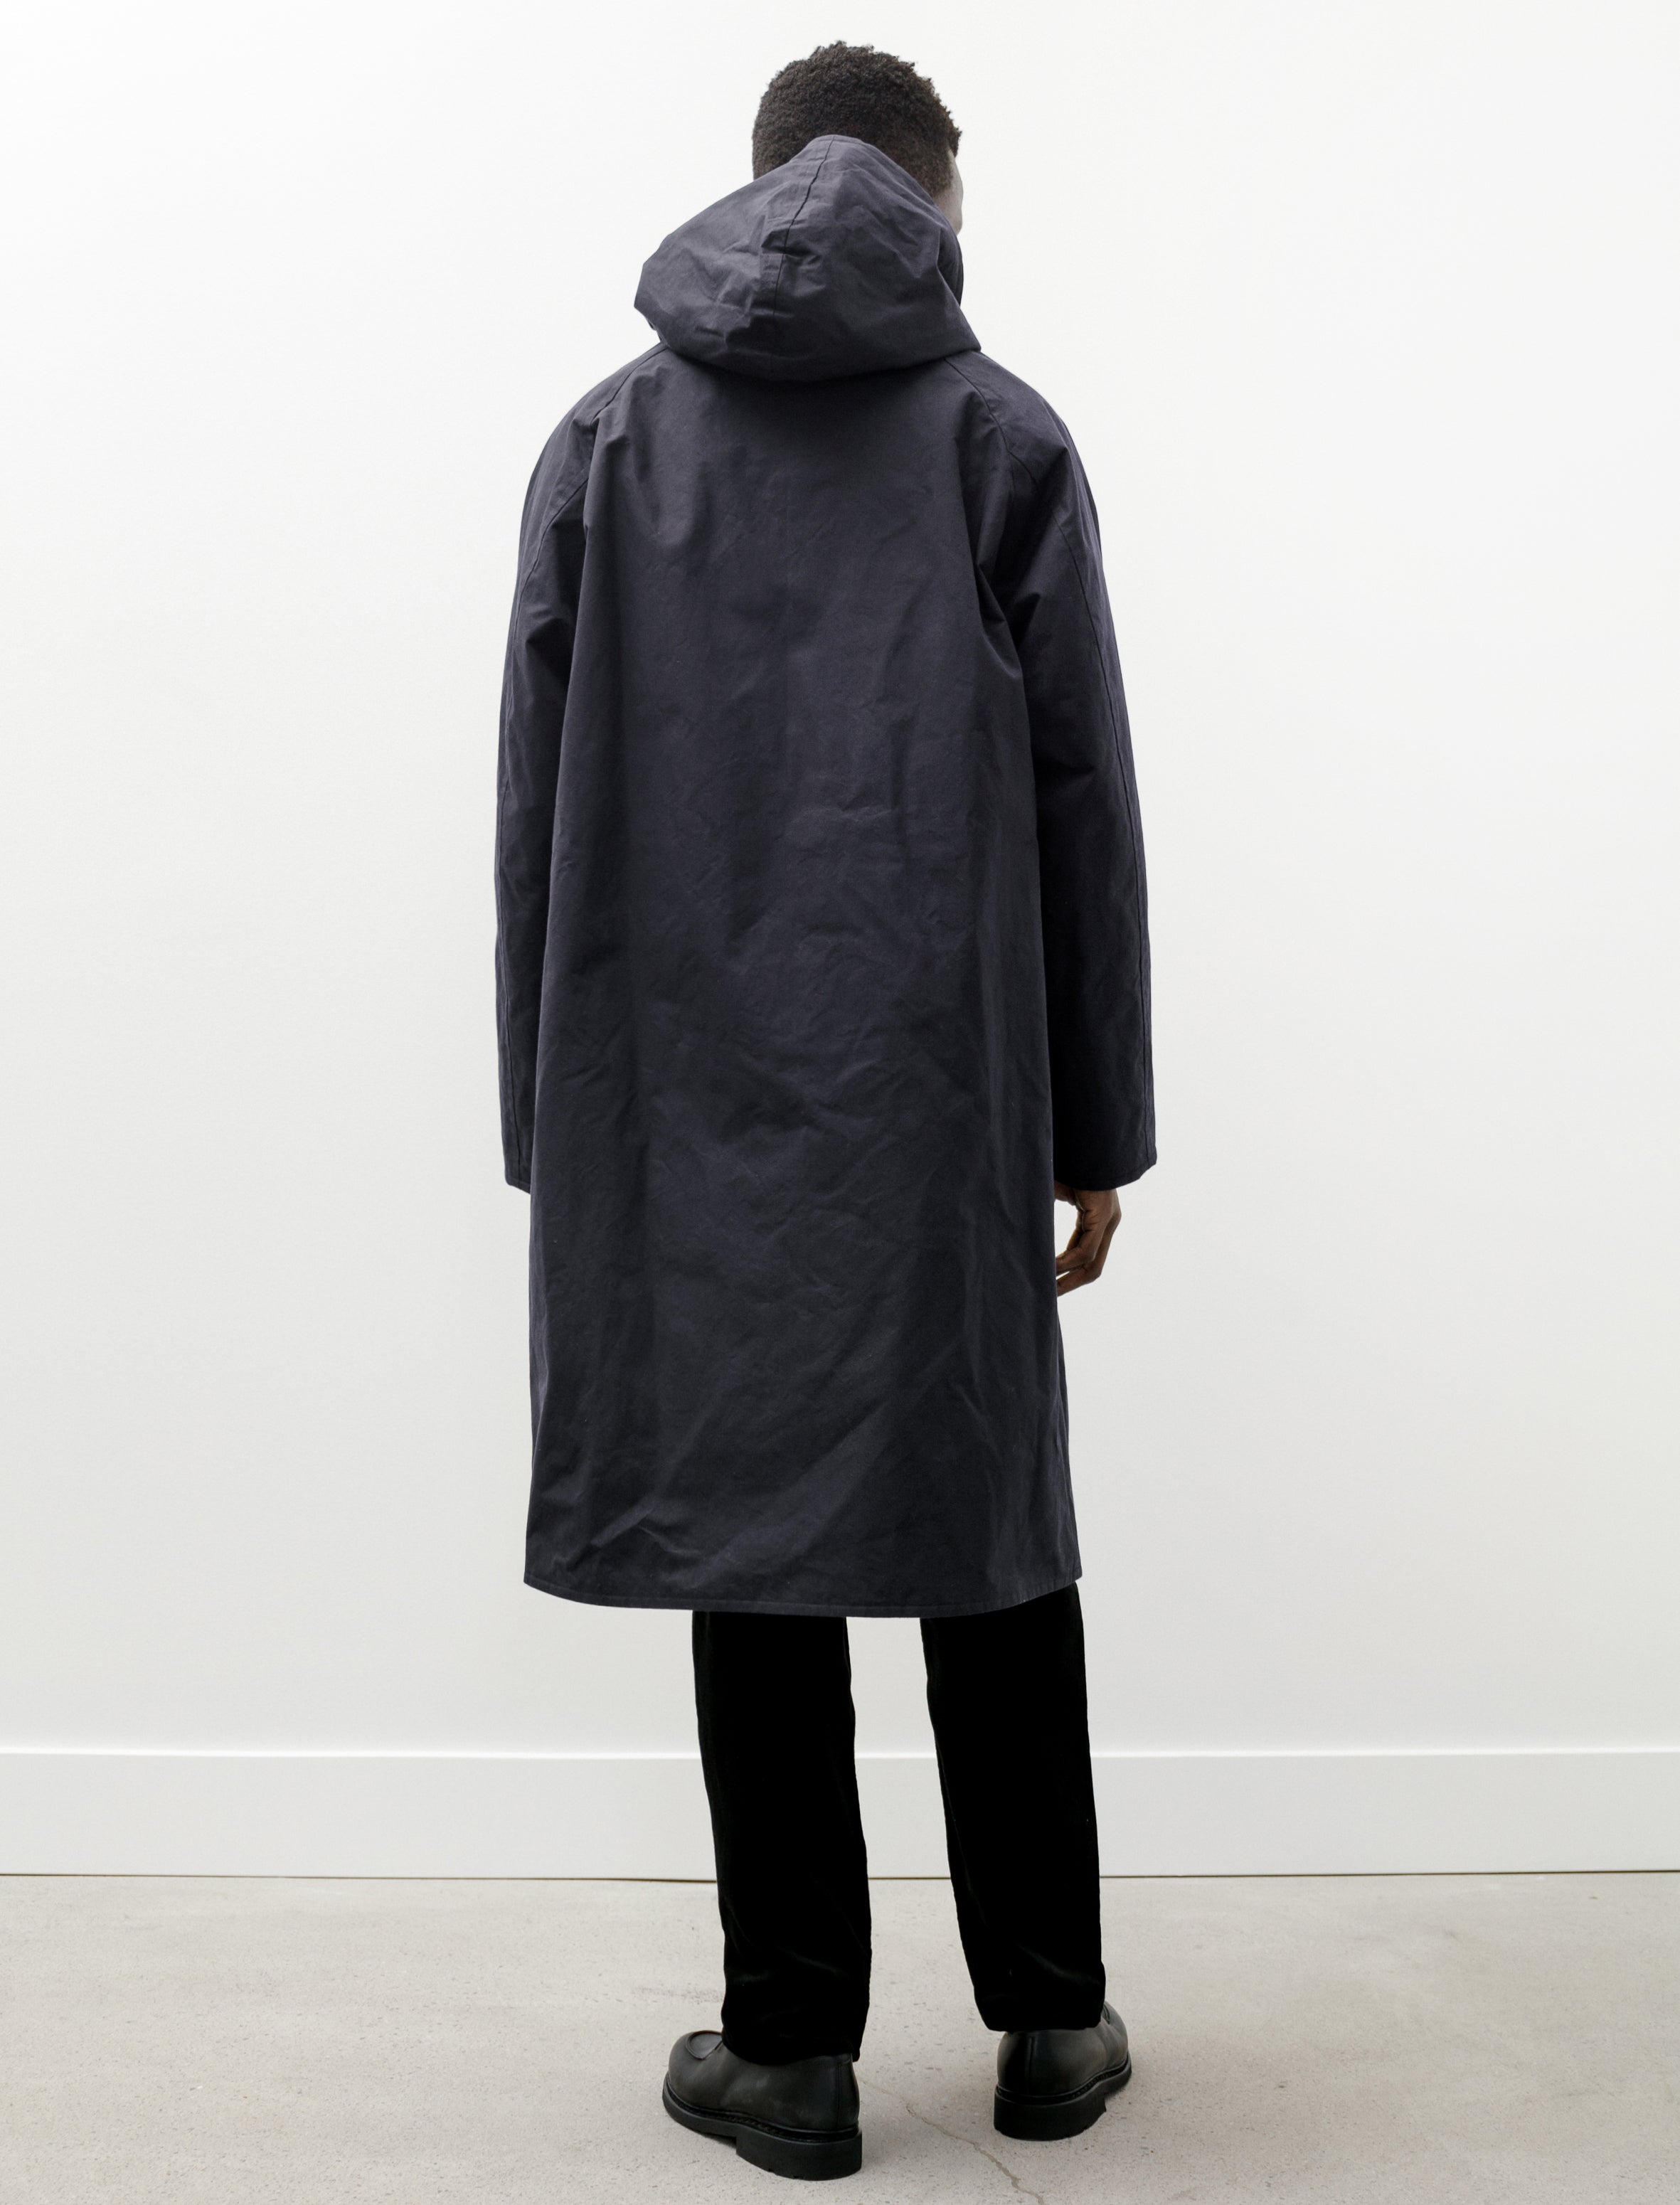 17500円安い アウトレット販売 メーカー直配送 COMOLI hooded coat